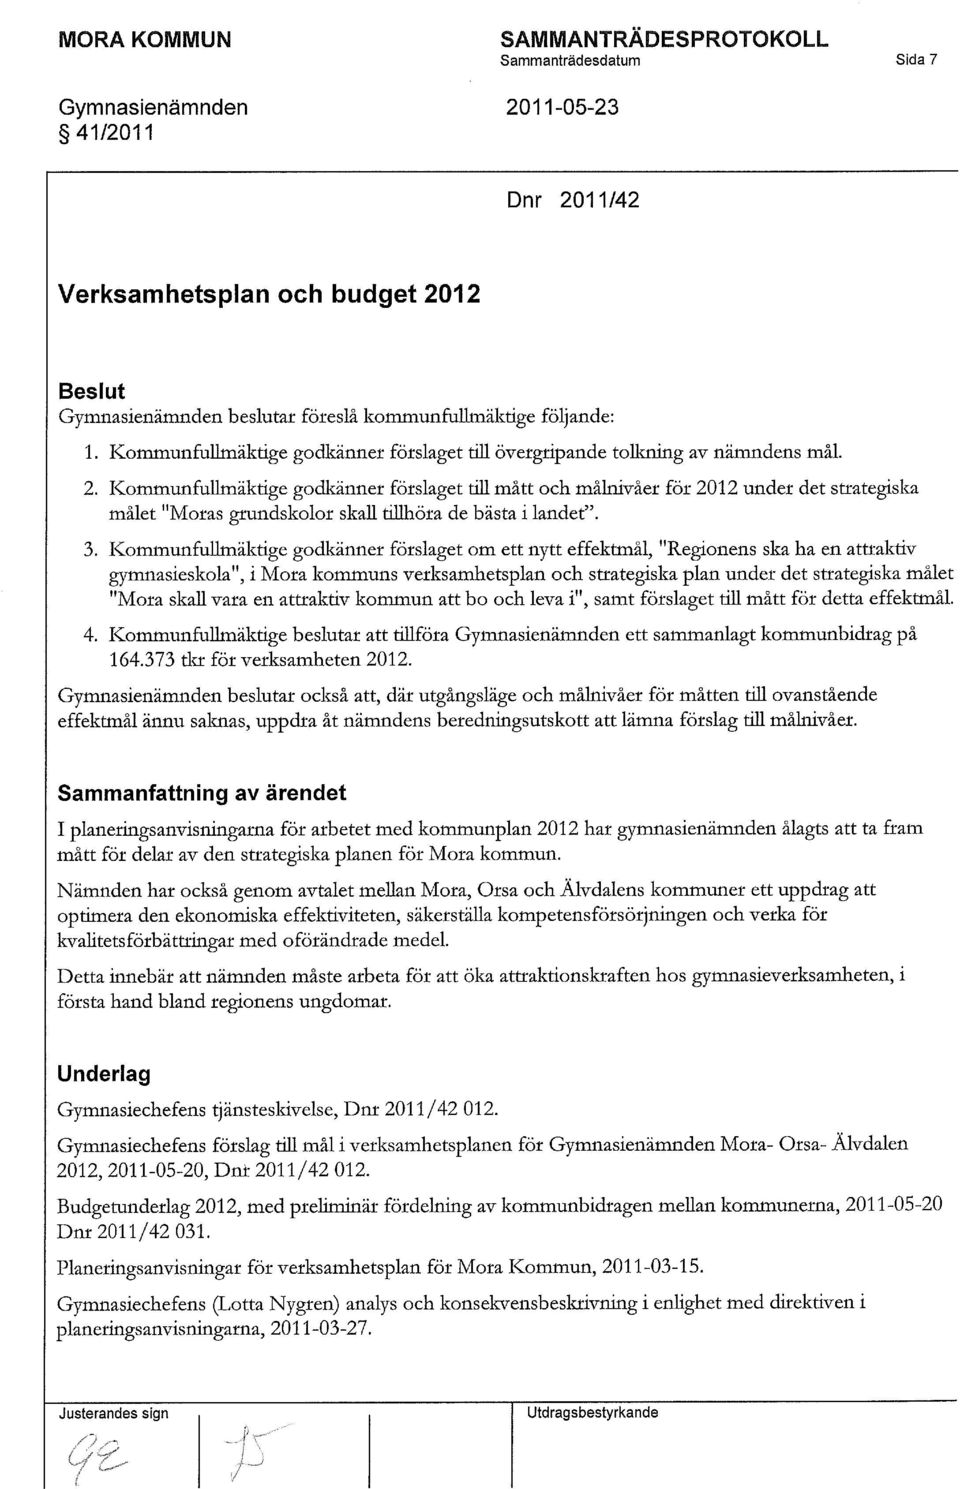 Kommunfullmäktige godkänner förslaget till mått och målnivåer för 2012 under det strategiska målet "Moras grundskolor skall tillhöra de bästa i landet". 3.